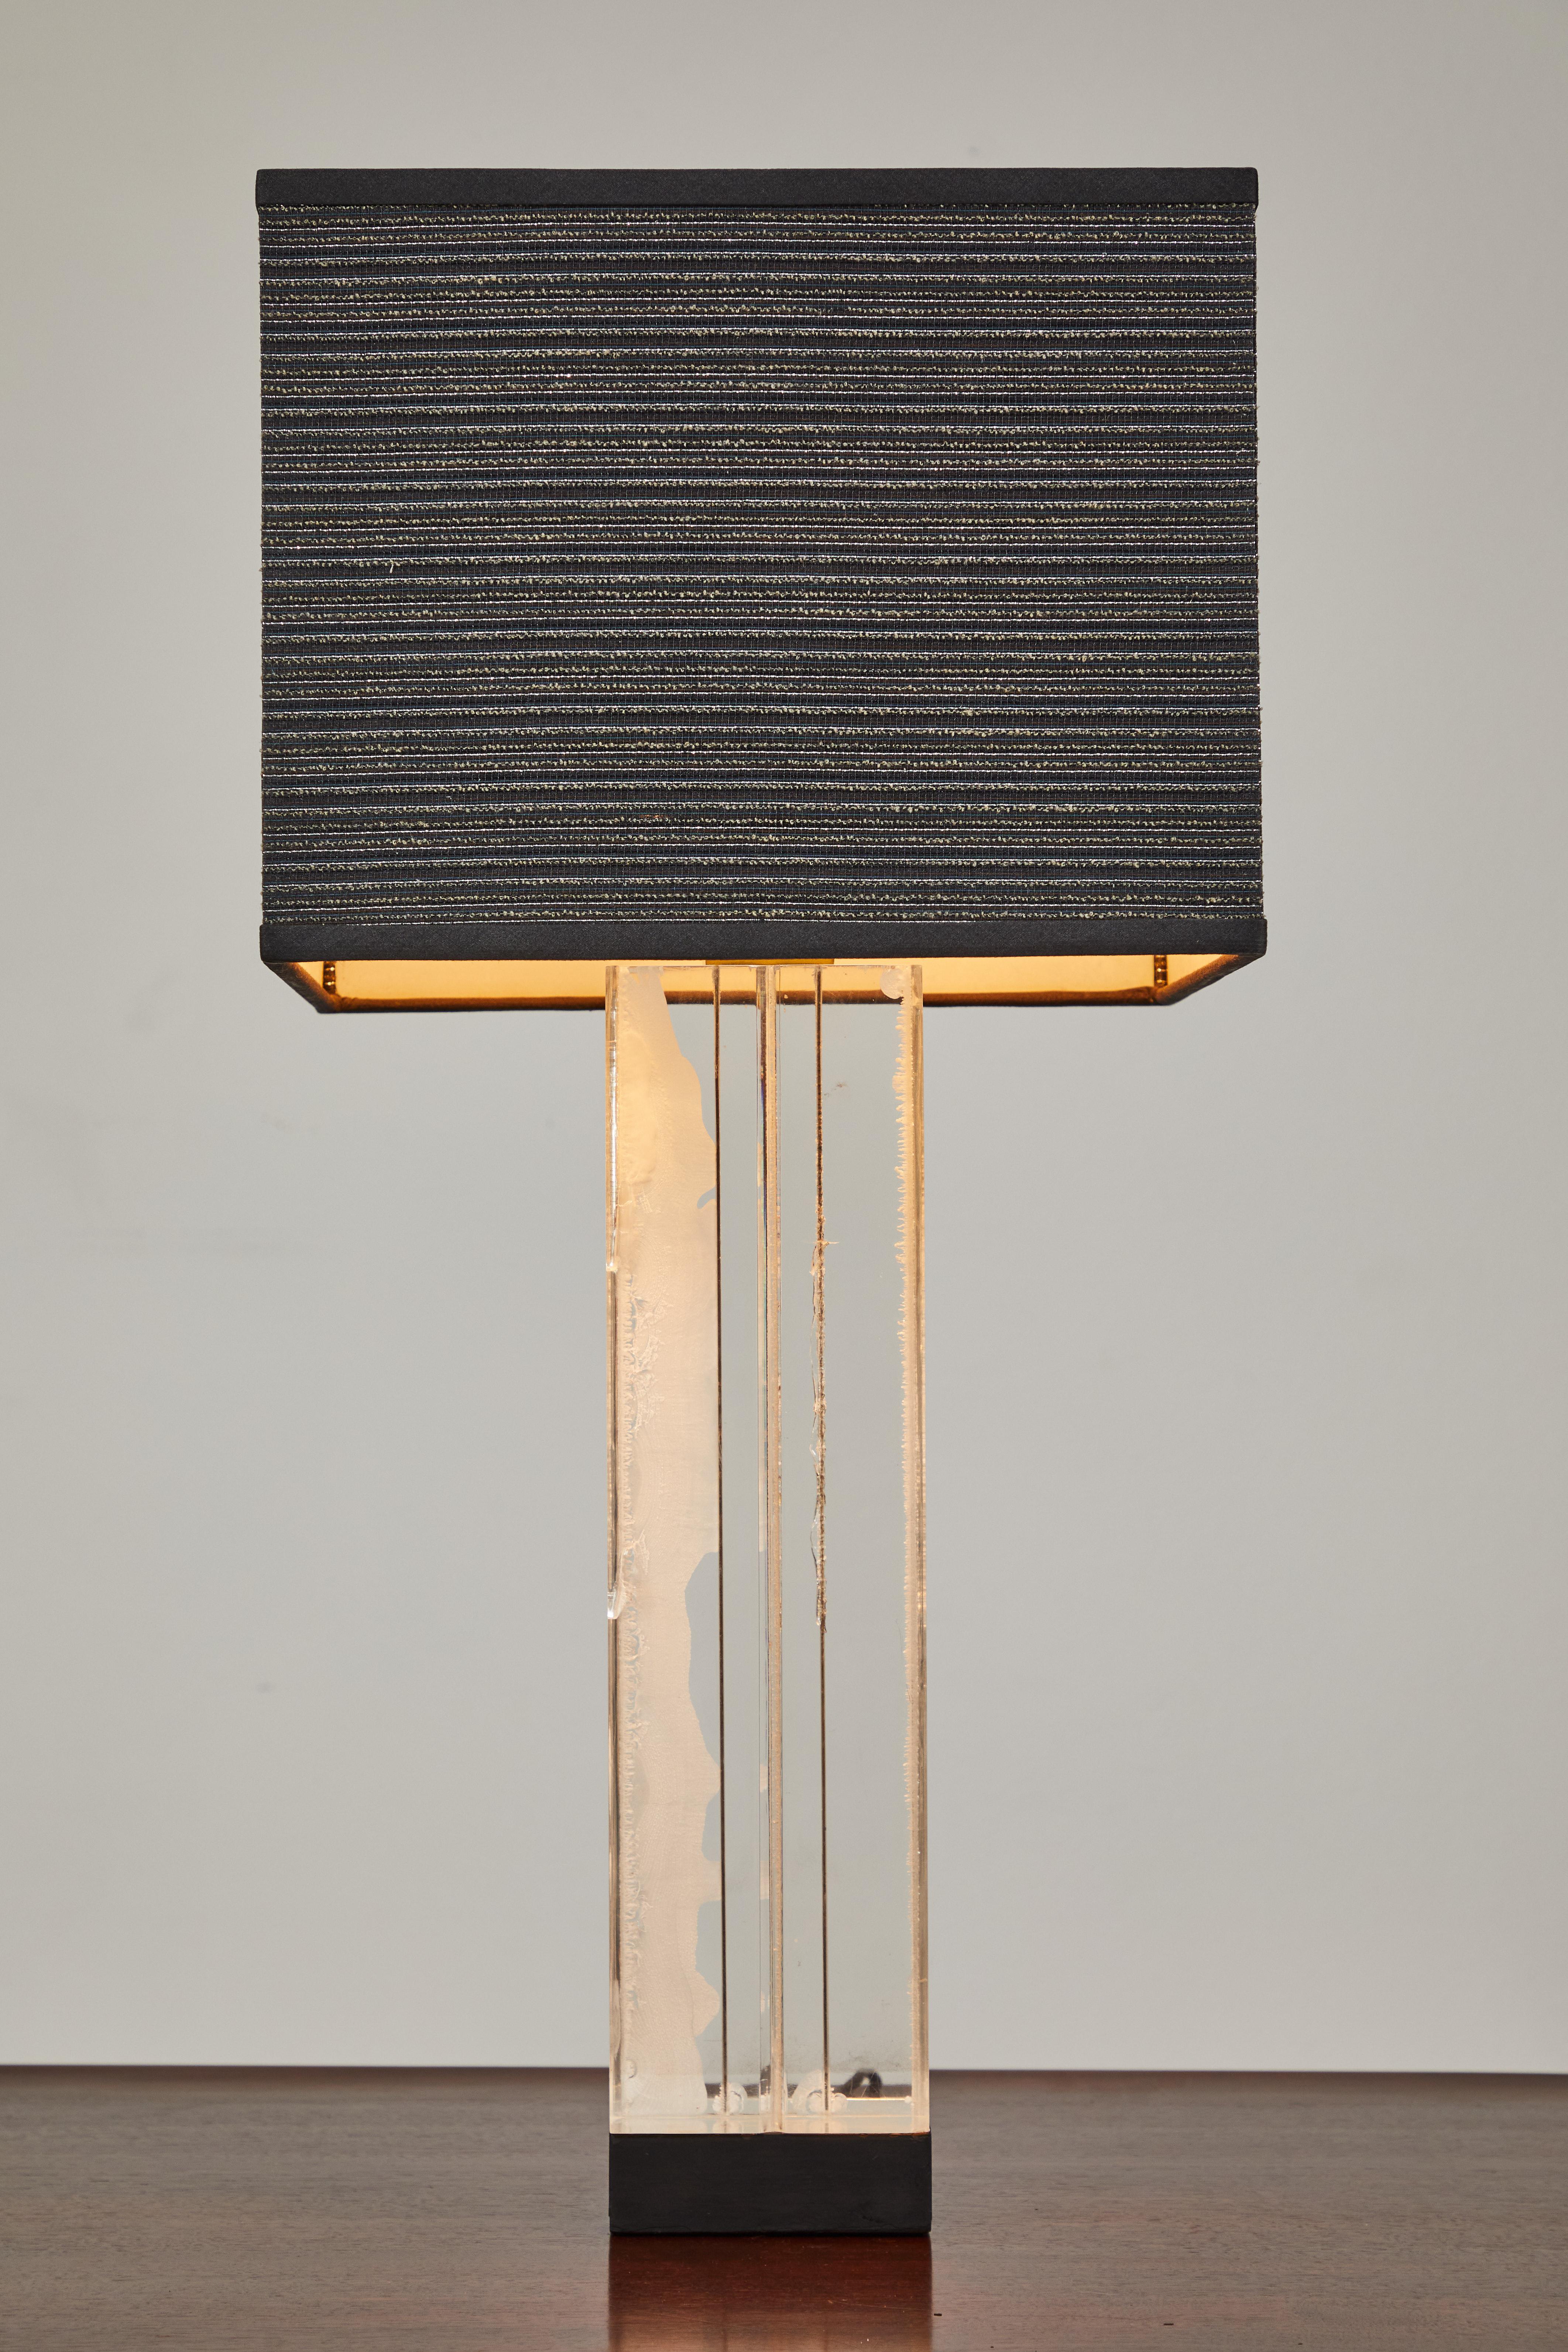 Cette lampe de table Billy Haines présente un bloc proéminent de lucite biseautée de 17,5 po de haut sur 5 po de large. La base est en bois et peinte en noir. Le nouvel abat-jour personnalisé est une soie noire recouverte d'un tissu à battants en